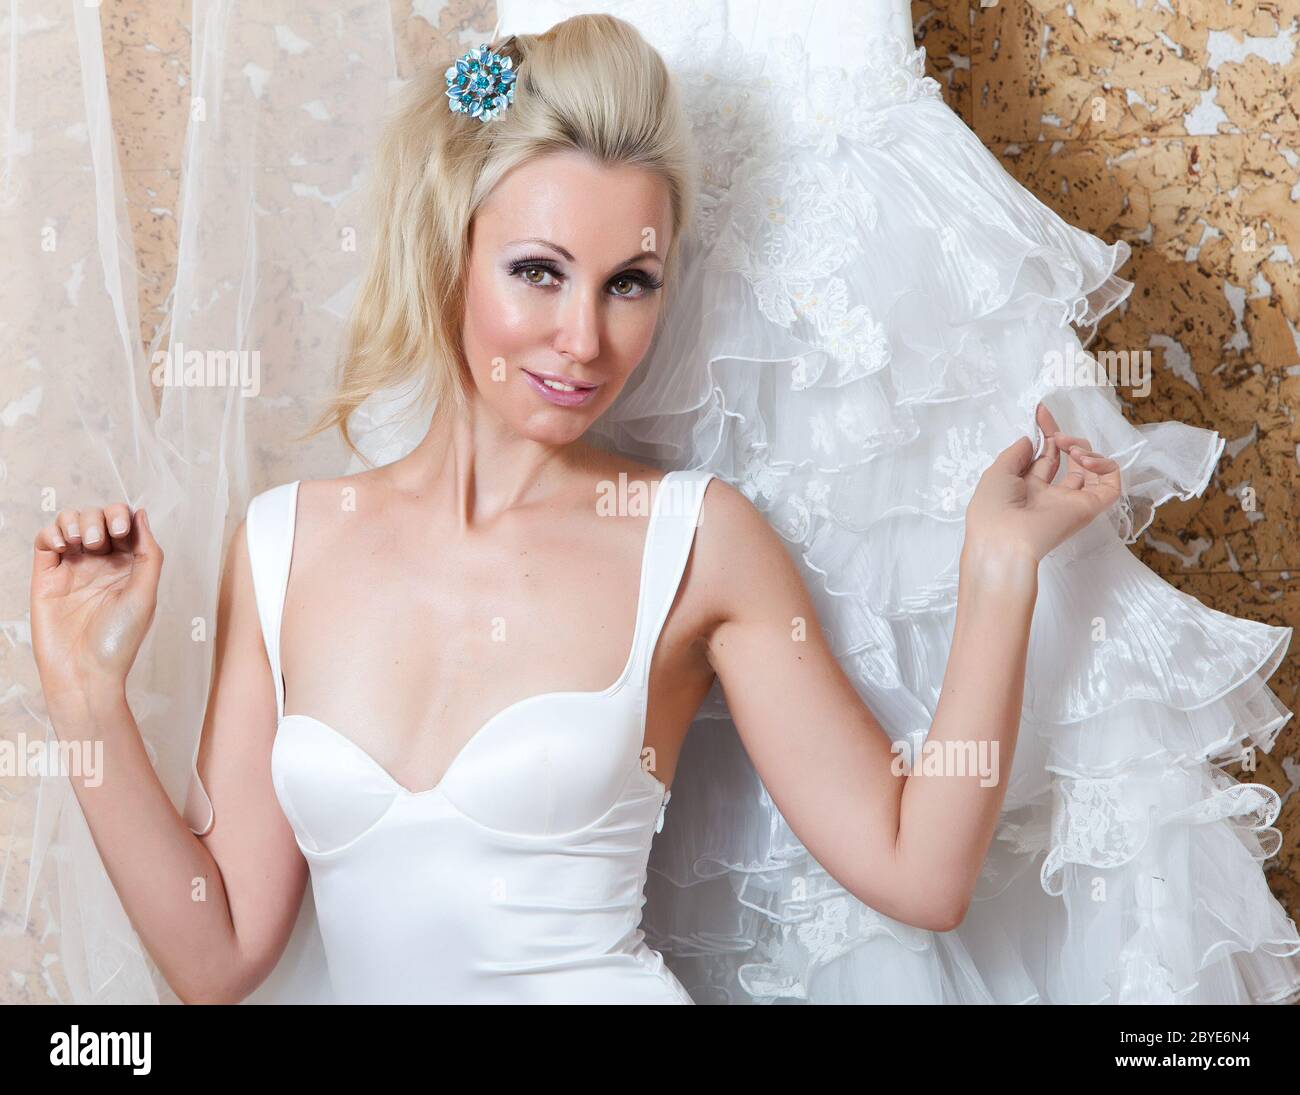 L'heureuse mariée essaie sur une robe de mariage Banque D'Images